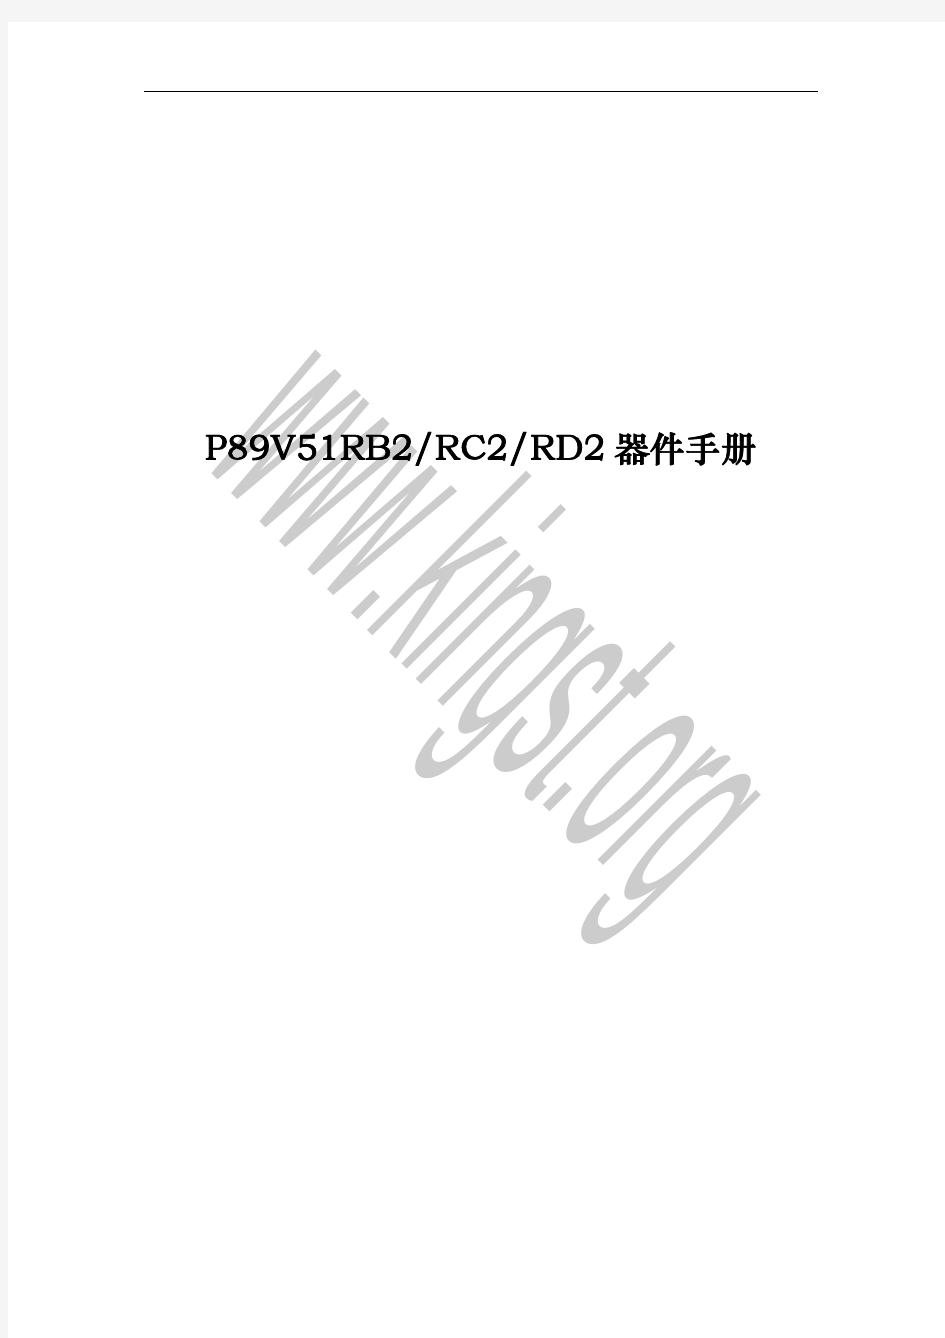 P89V51RD2中文手册